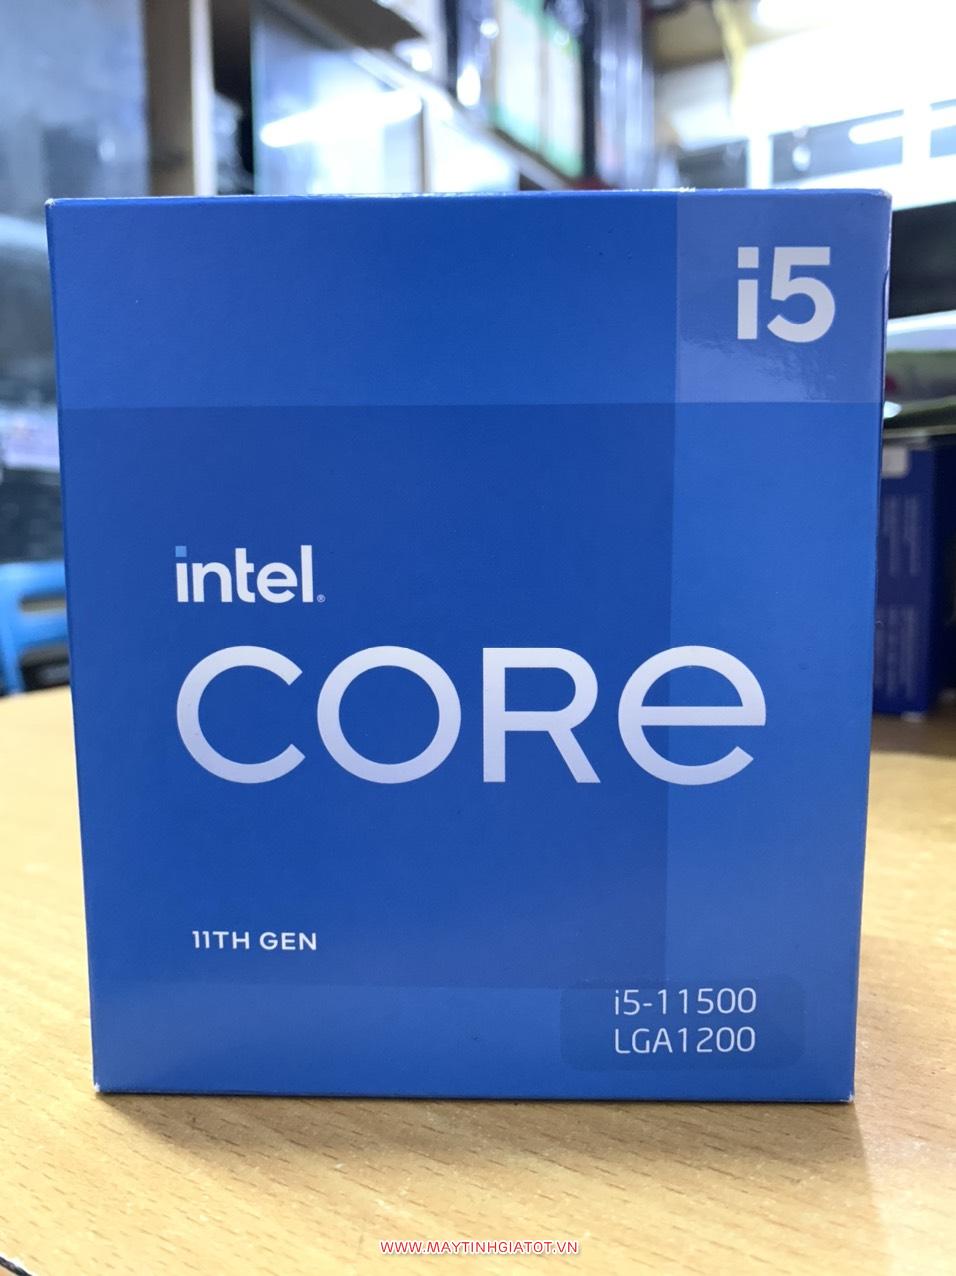 CPU INTEL CORE I5-11500 (12M CACHE, 2.70 GHZ UP TO 4.60 GHZ, 6 NHÂN 12 LUỒNG